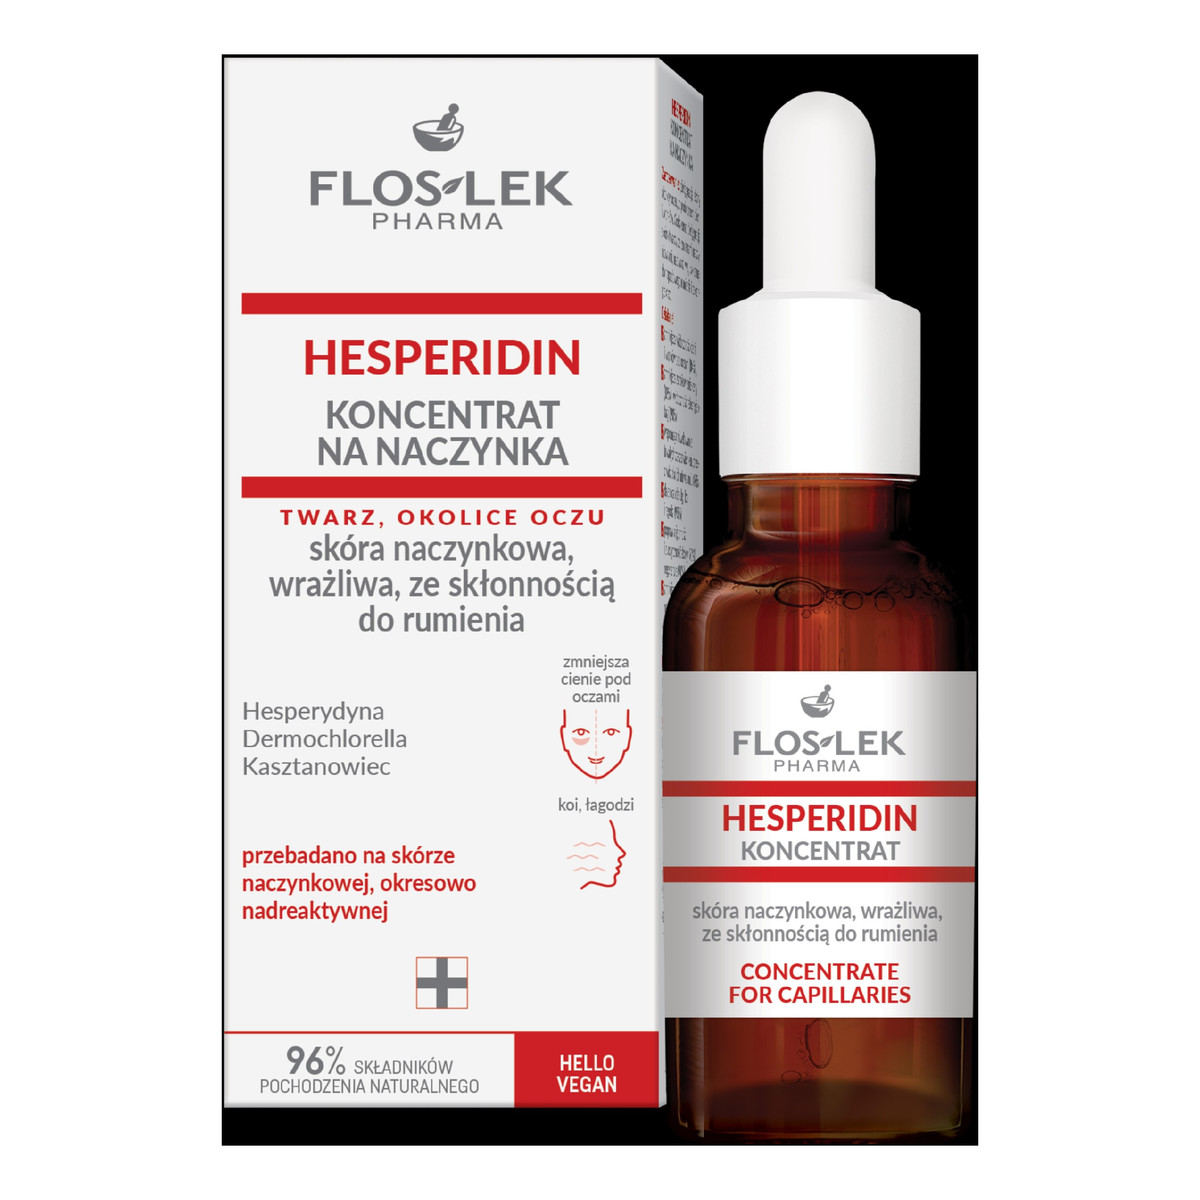 FlosLek Floslek pharma hesperidin koncentrat na naczynka-skóra naczynkowa,wrażliwa ze skłonnością do rumienia 30ml